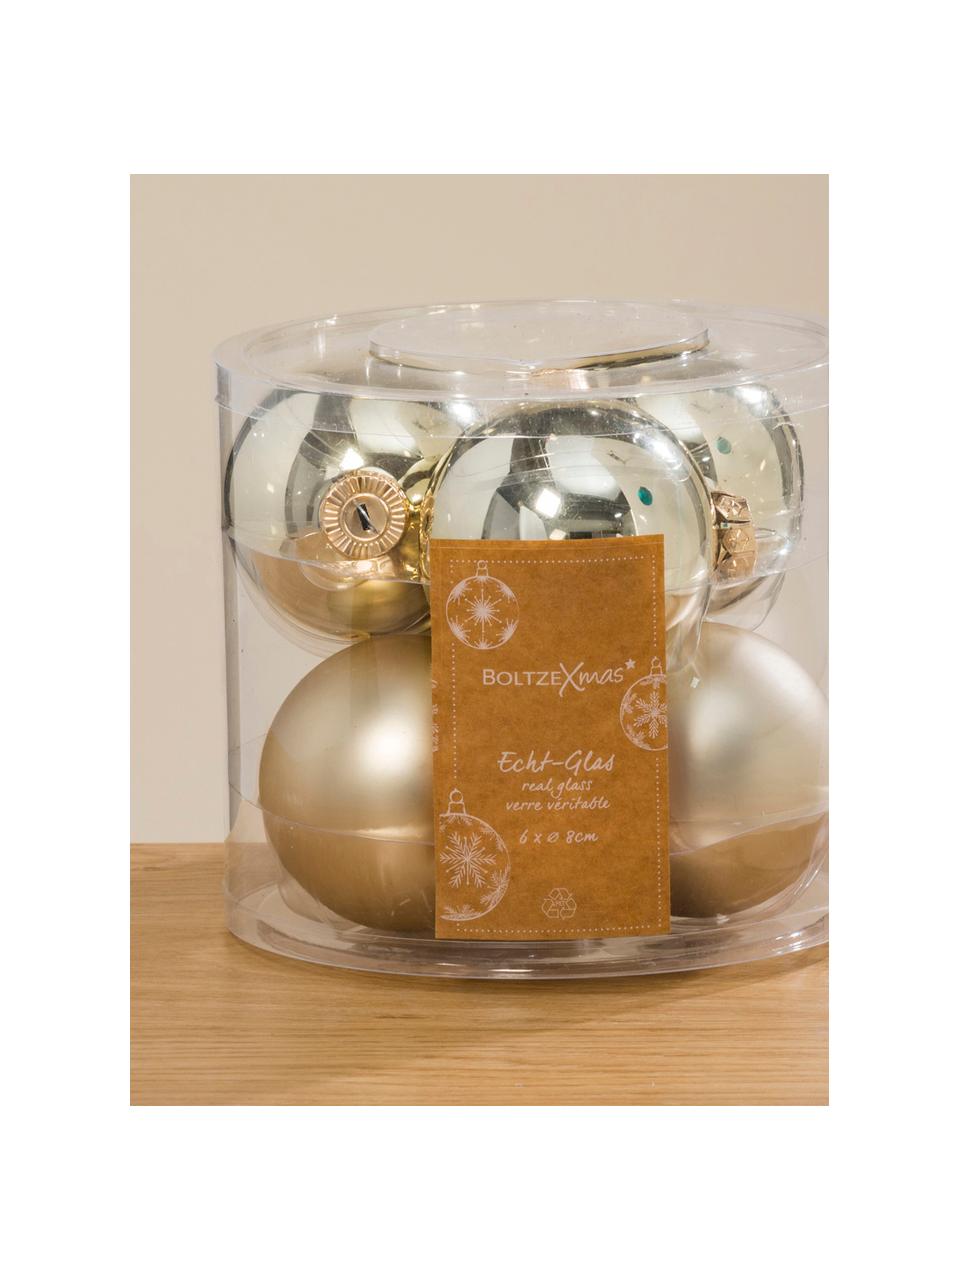 Kerstballenset Lorene, 6-delig, Mat en glanzend champagnekleurig, Ø 8 cm